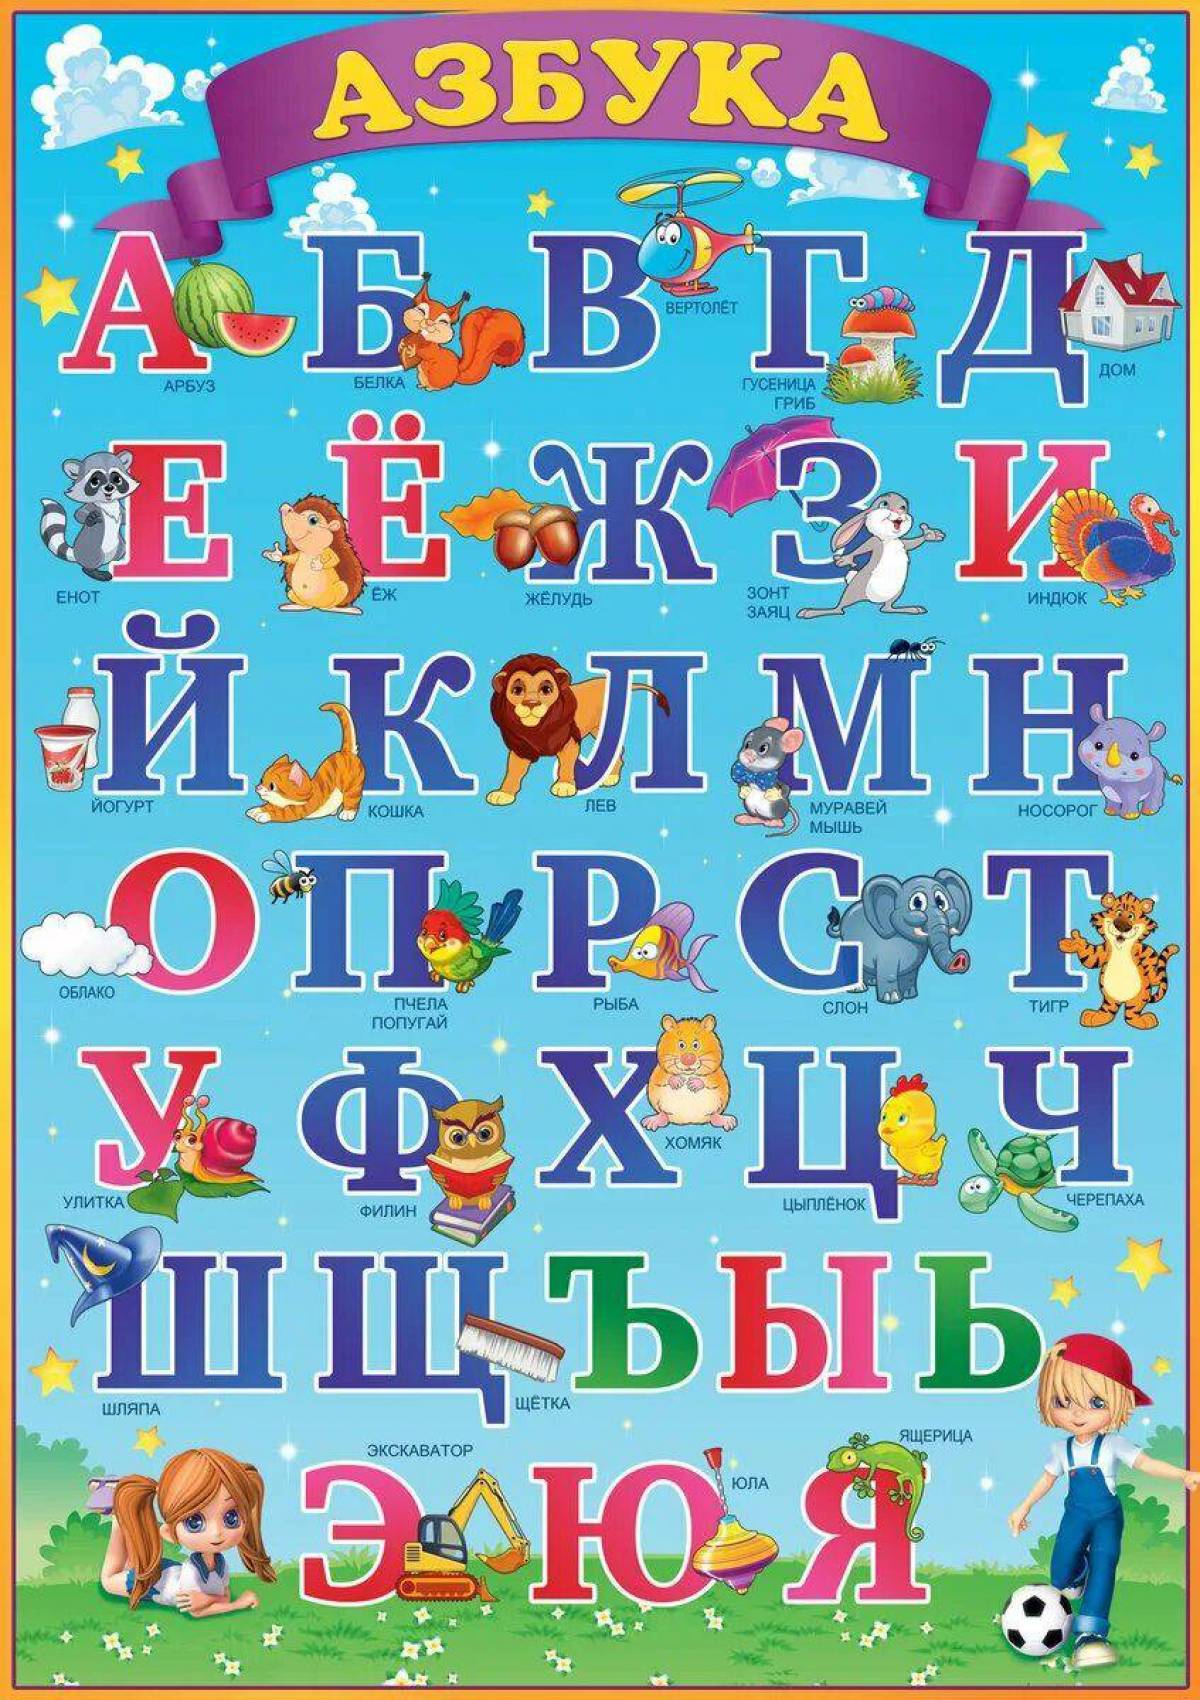 Русский алфавит это. Азбука для детей. Алфавит русский для детей. Азбука детская в картинках. Плакат алфавит для детей.